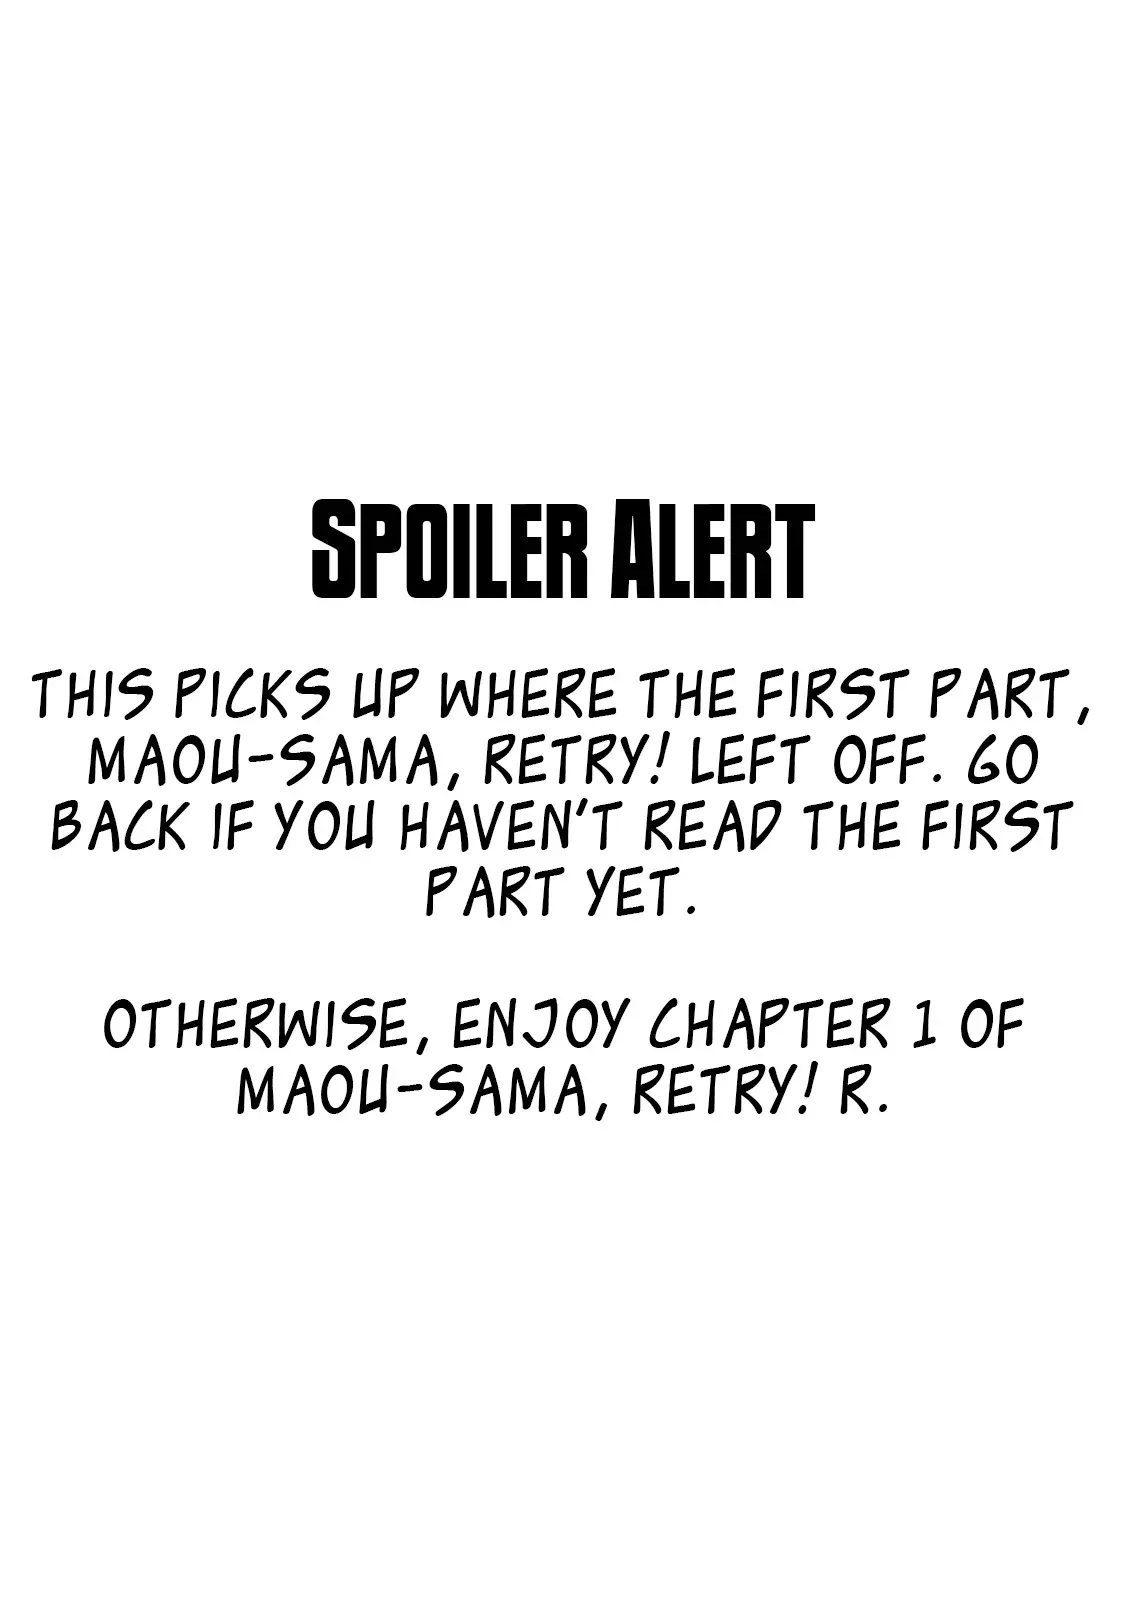 Read Maou-Sama, Retry! R Chapter 17 on Mangakakalot